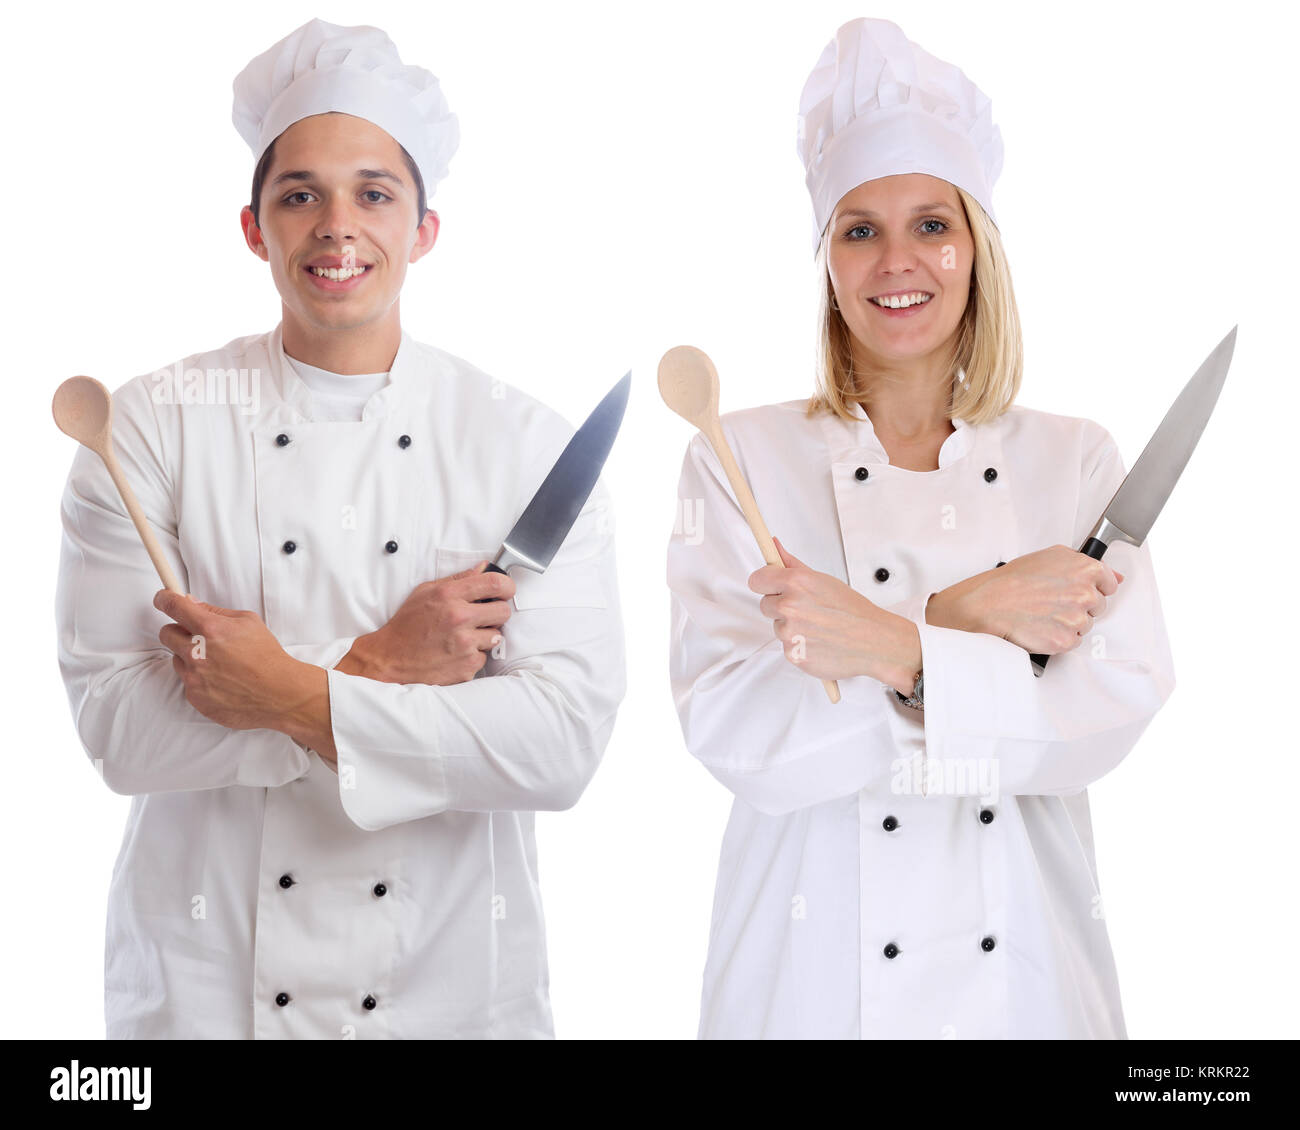 Chef cuisine jeune stagiaire stagiaires apprenti cuisinier formation profession cut Banque D'Images